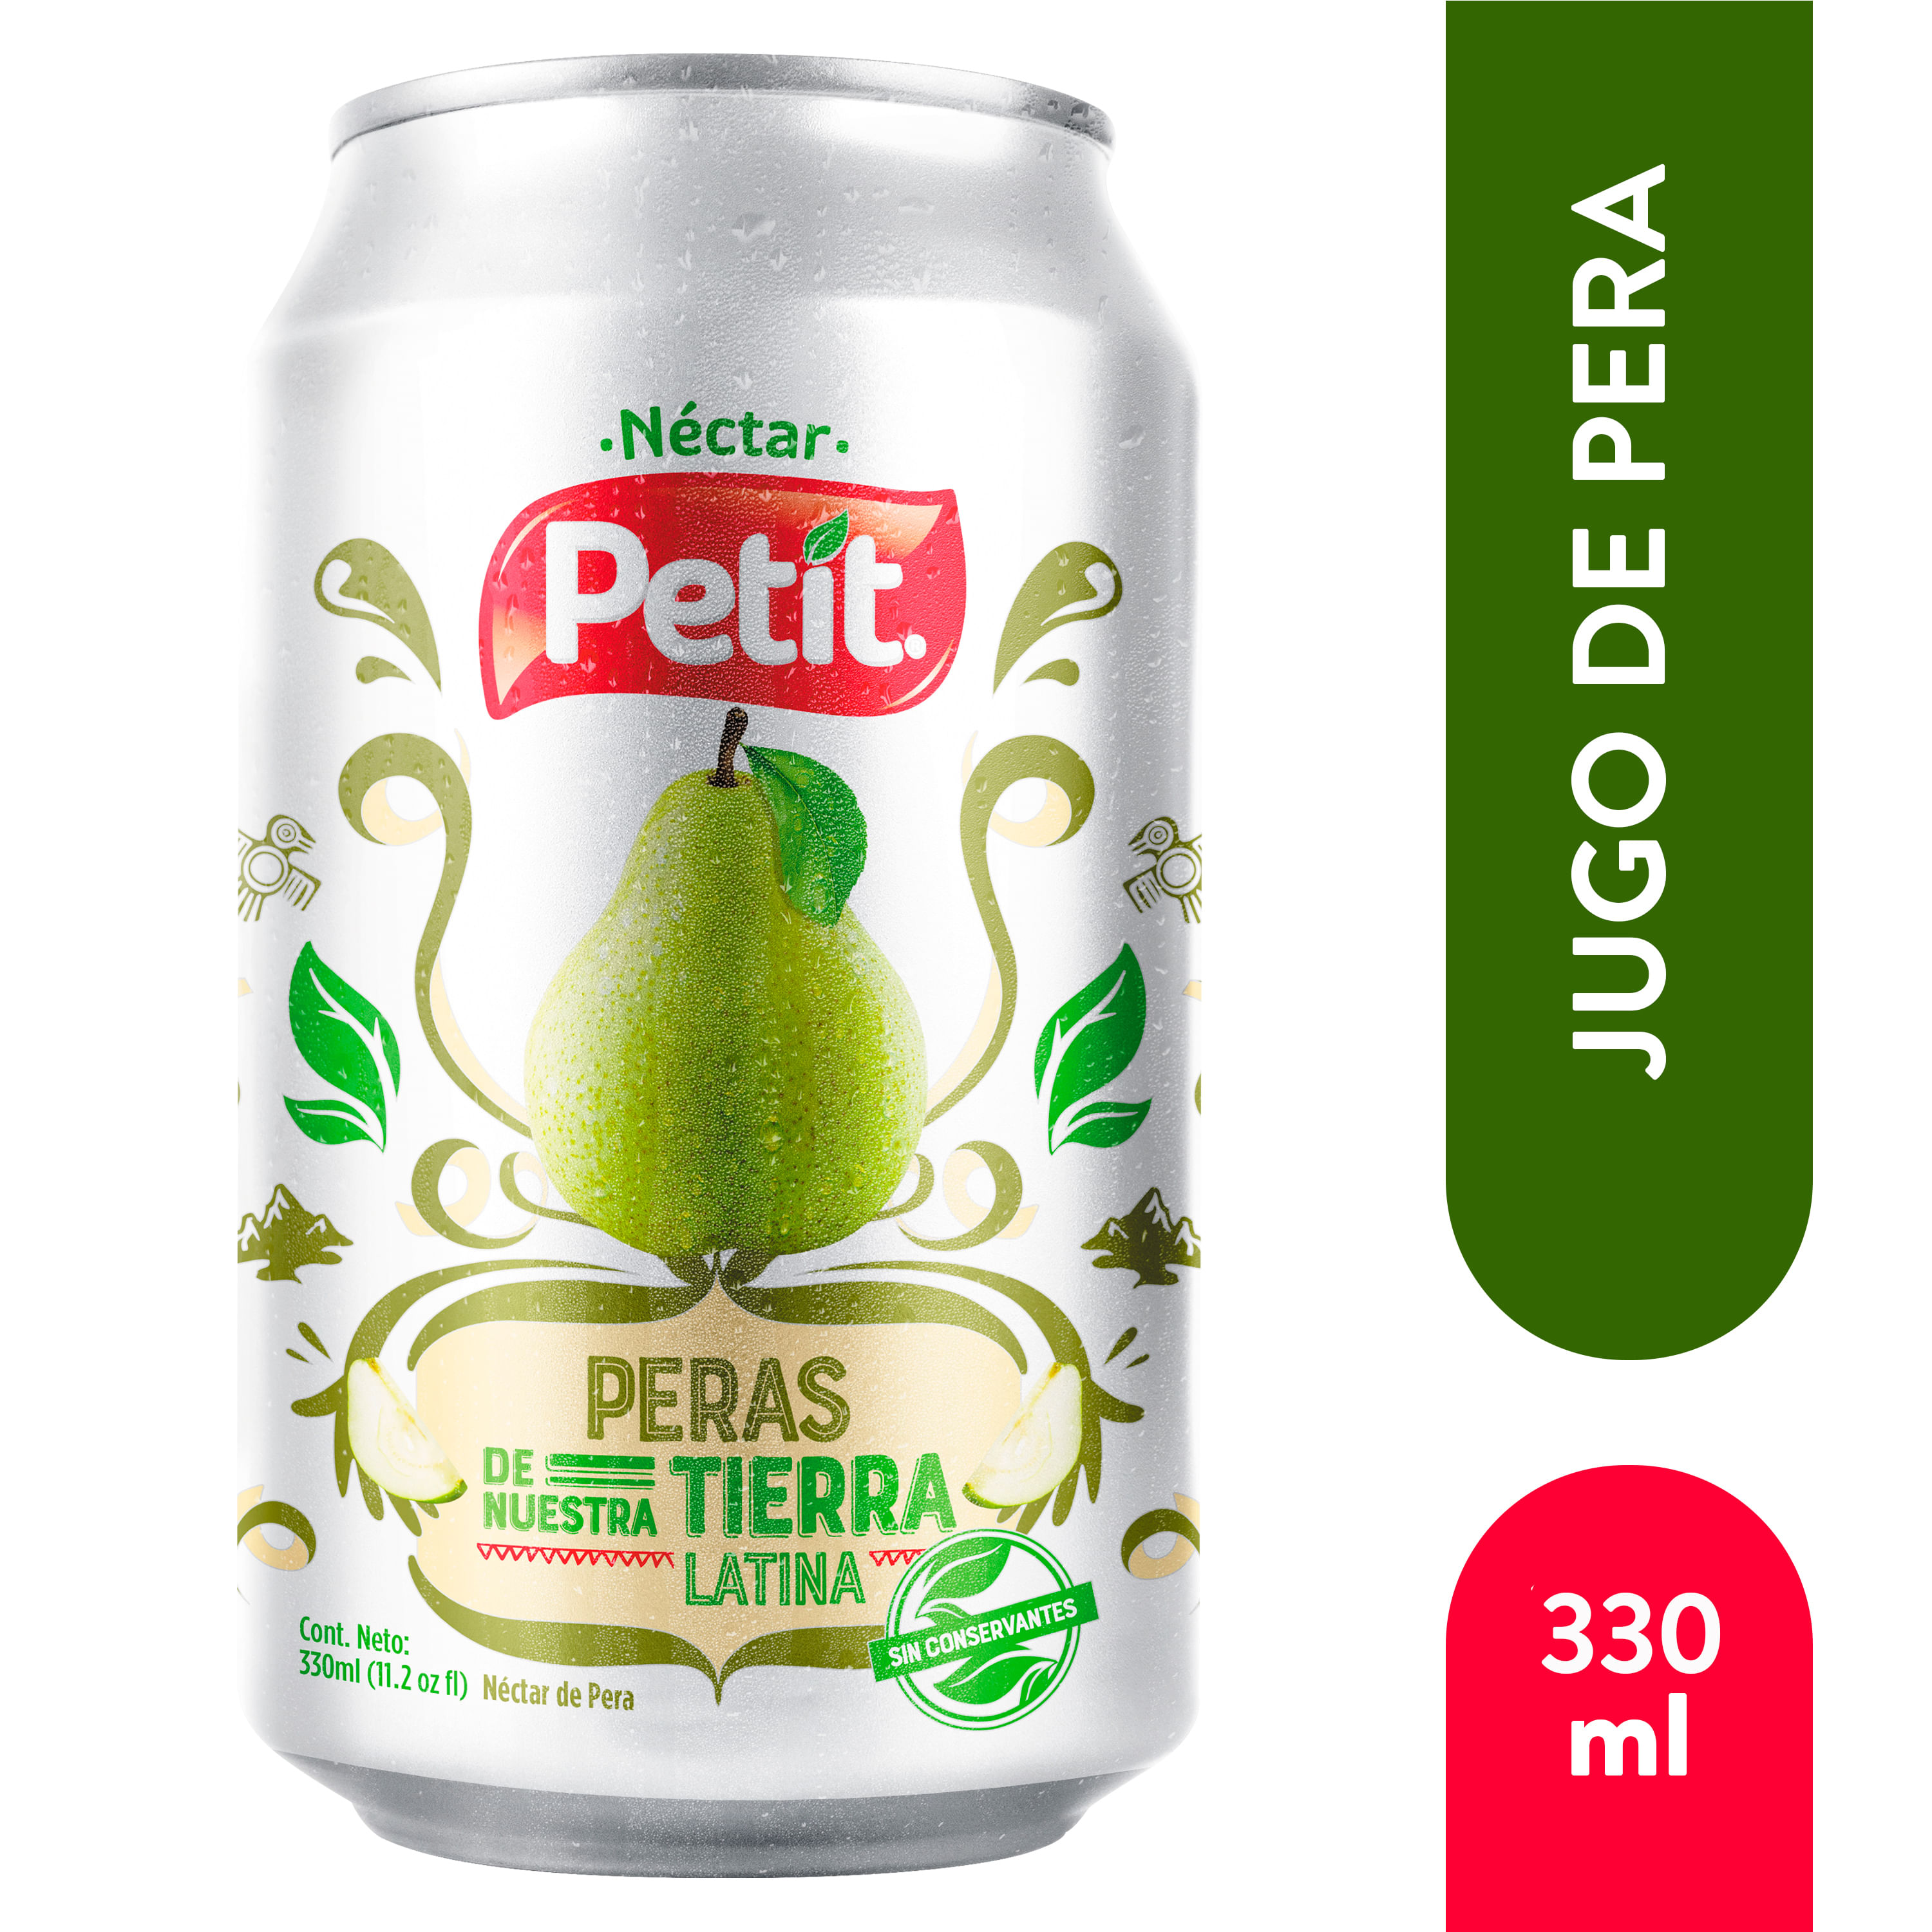 Nectar-Petit-Pera-Tetra-330Ml-1-4533